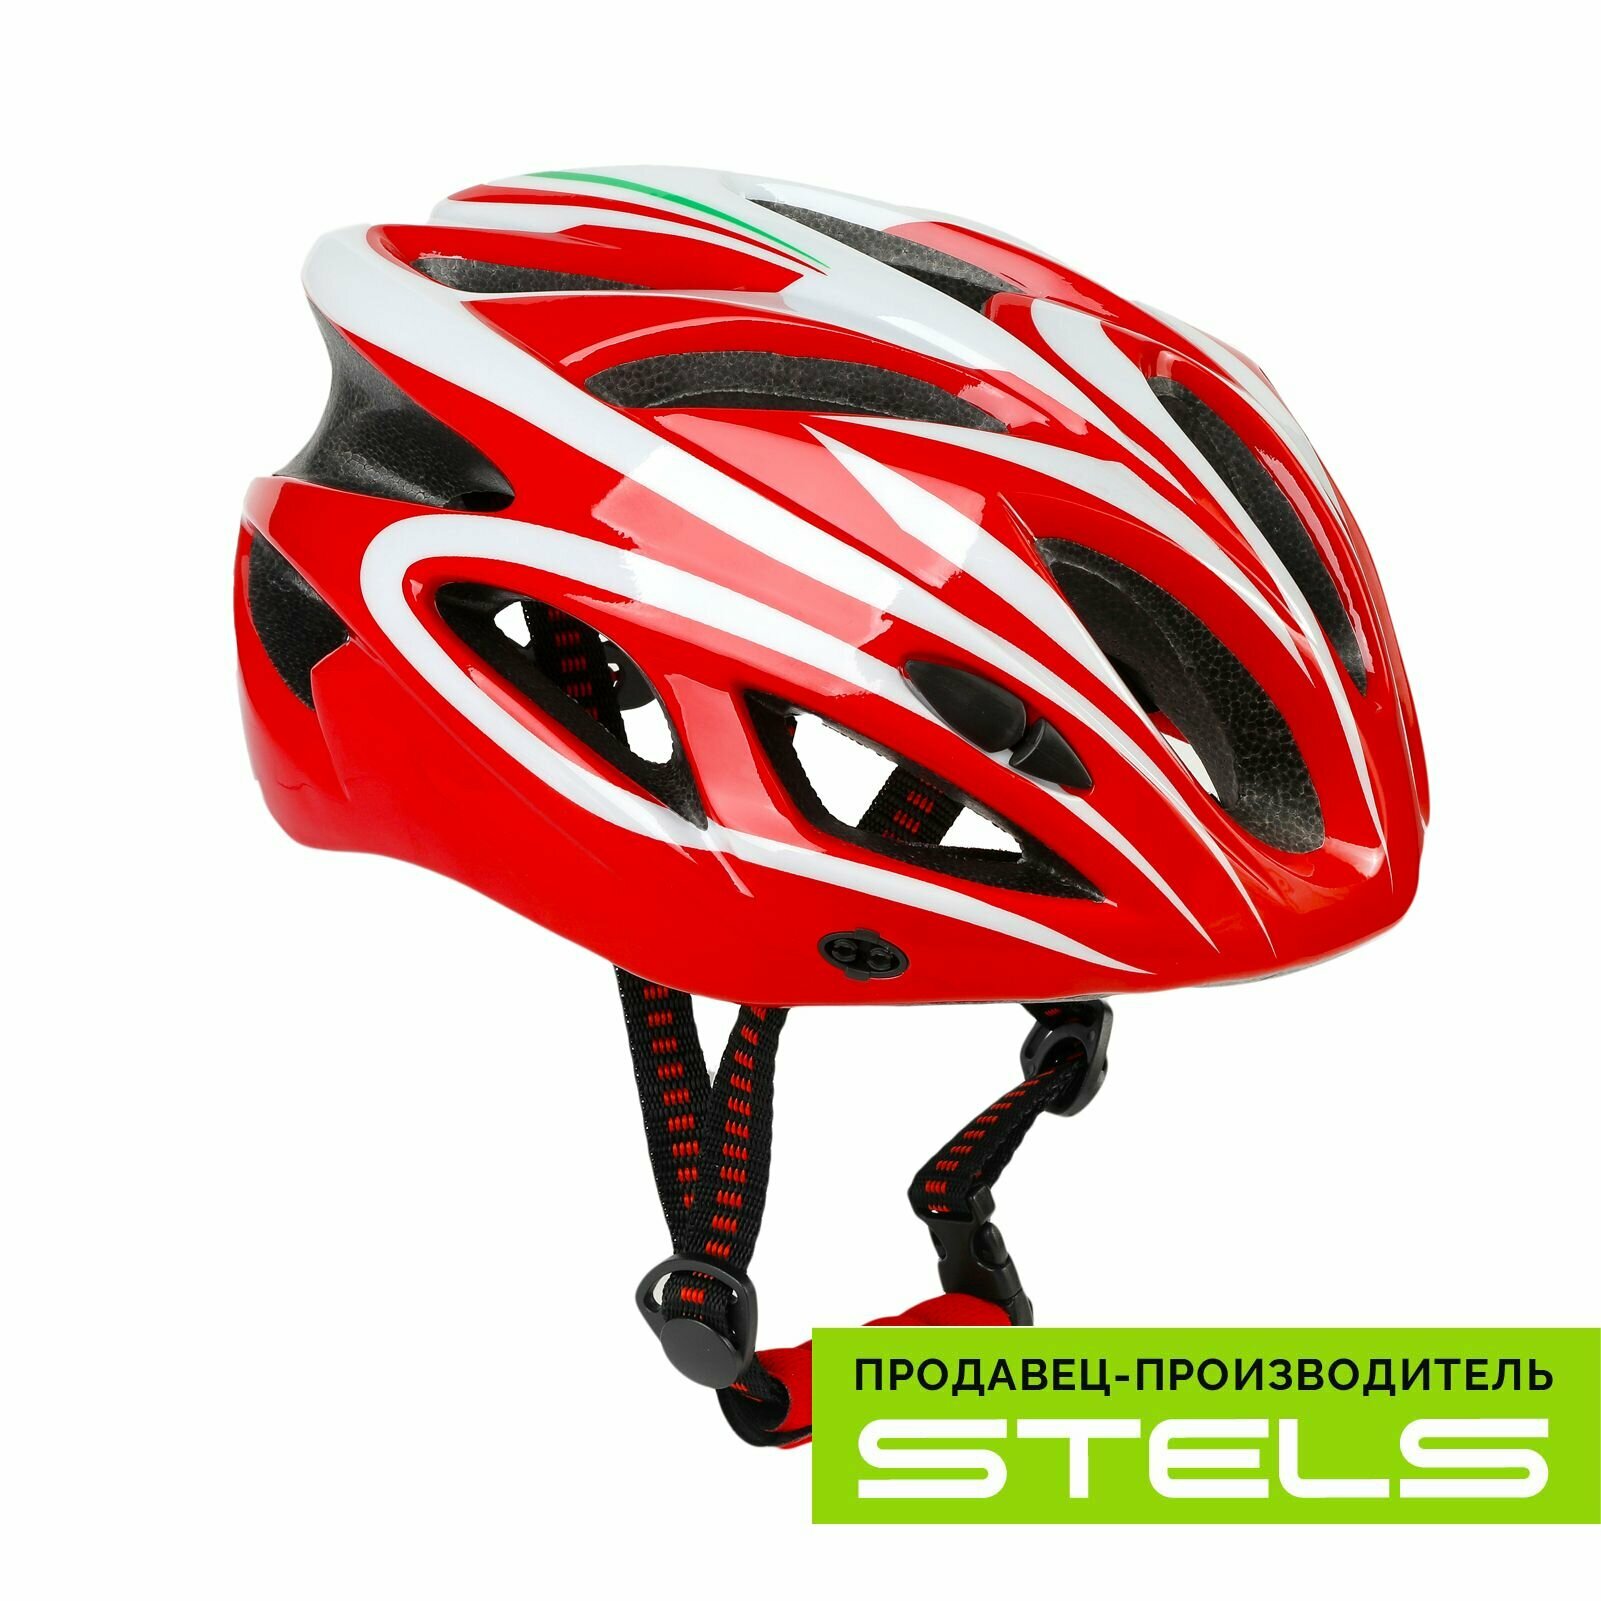 Шлем защитный для катания на велосипеде FSD-HL022 (in-mold) бело-красный, размер L NEW